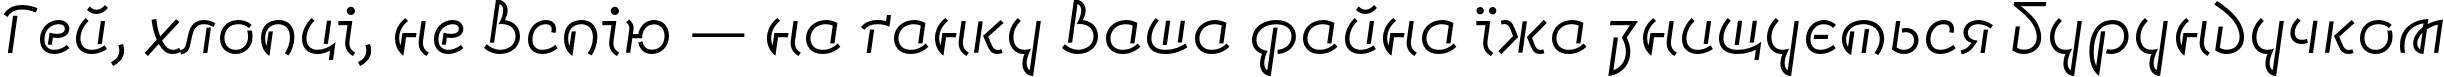 Пример написания шрифтом Smena Light текста на украинском